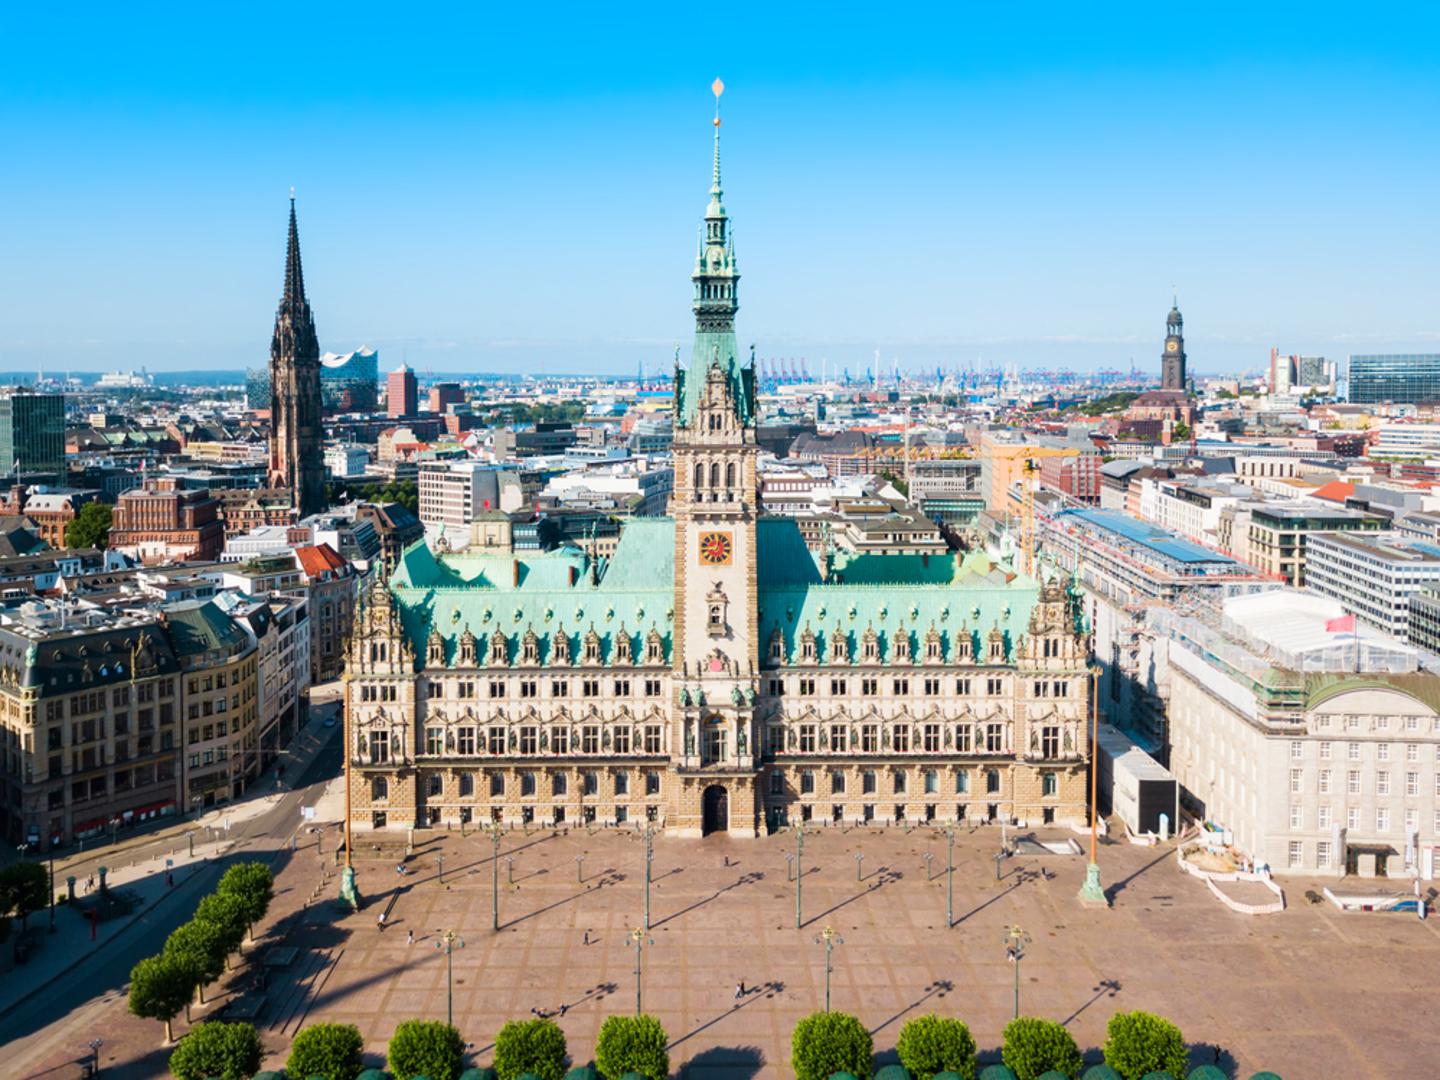 Rathaus: Gradska vijećnica slovi za jednu od najljepših zgrada u Hamburgu. Izgrađena je 1897. godine, nalazi se u strogom središtu, a prepoznatljiva je po tornju visokom 112 metara. Svakodnevno je obiđe više stotina turista.